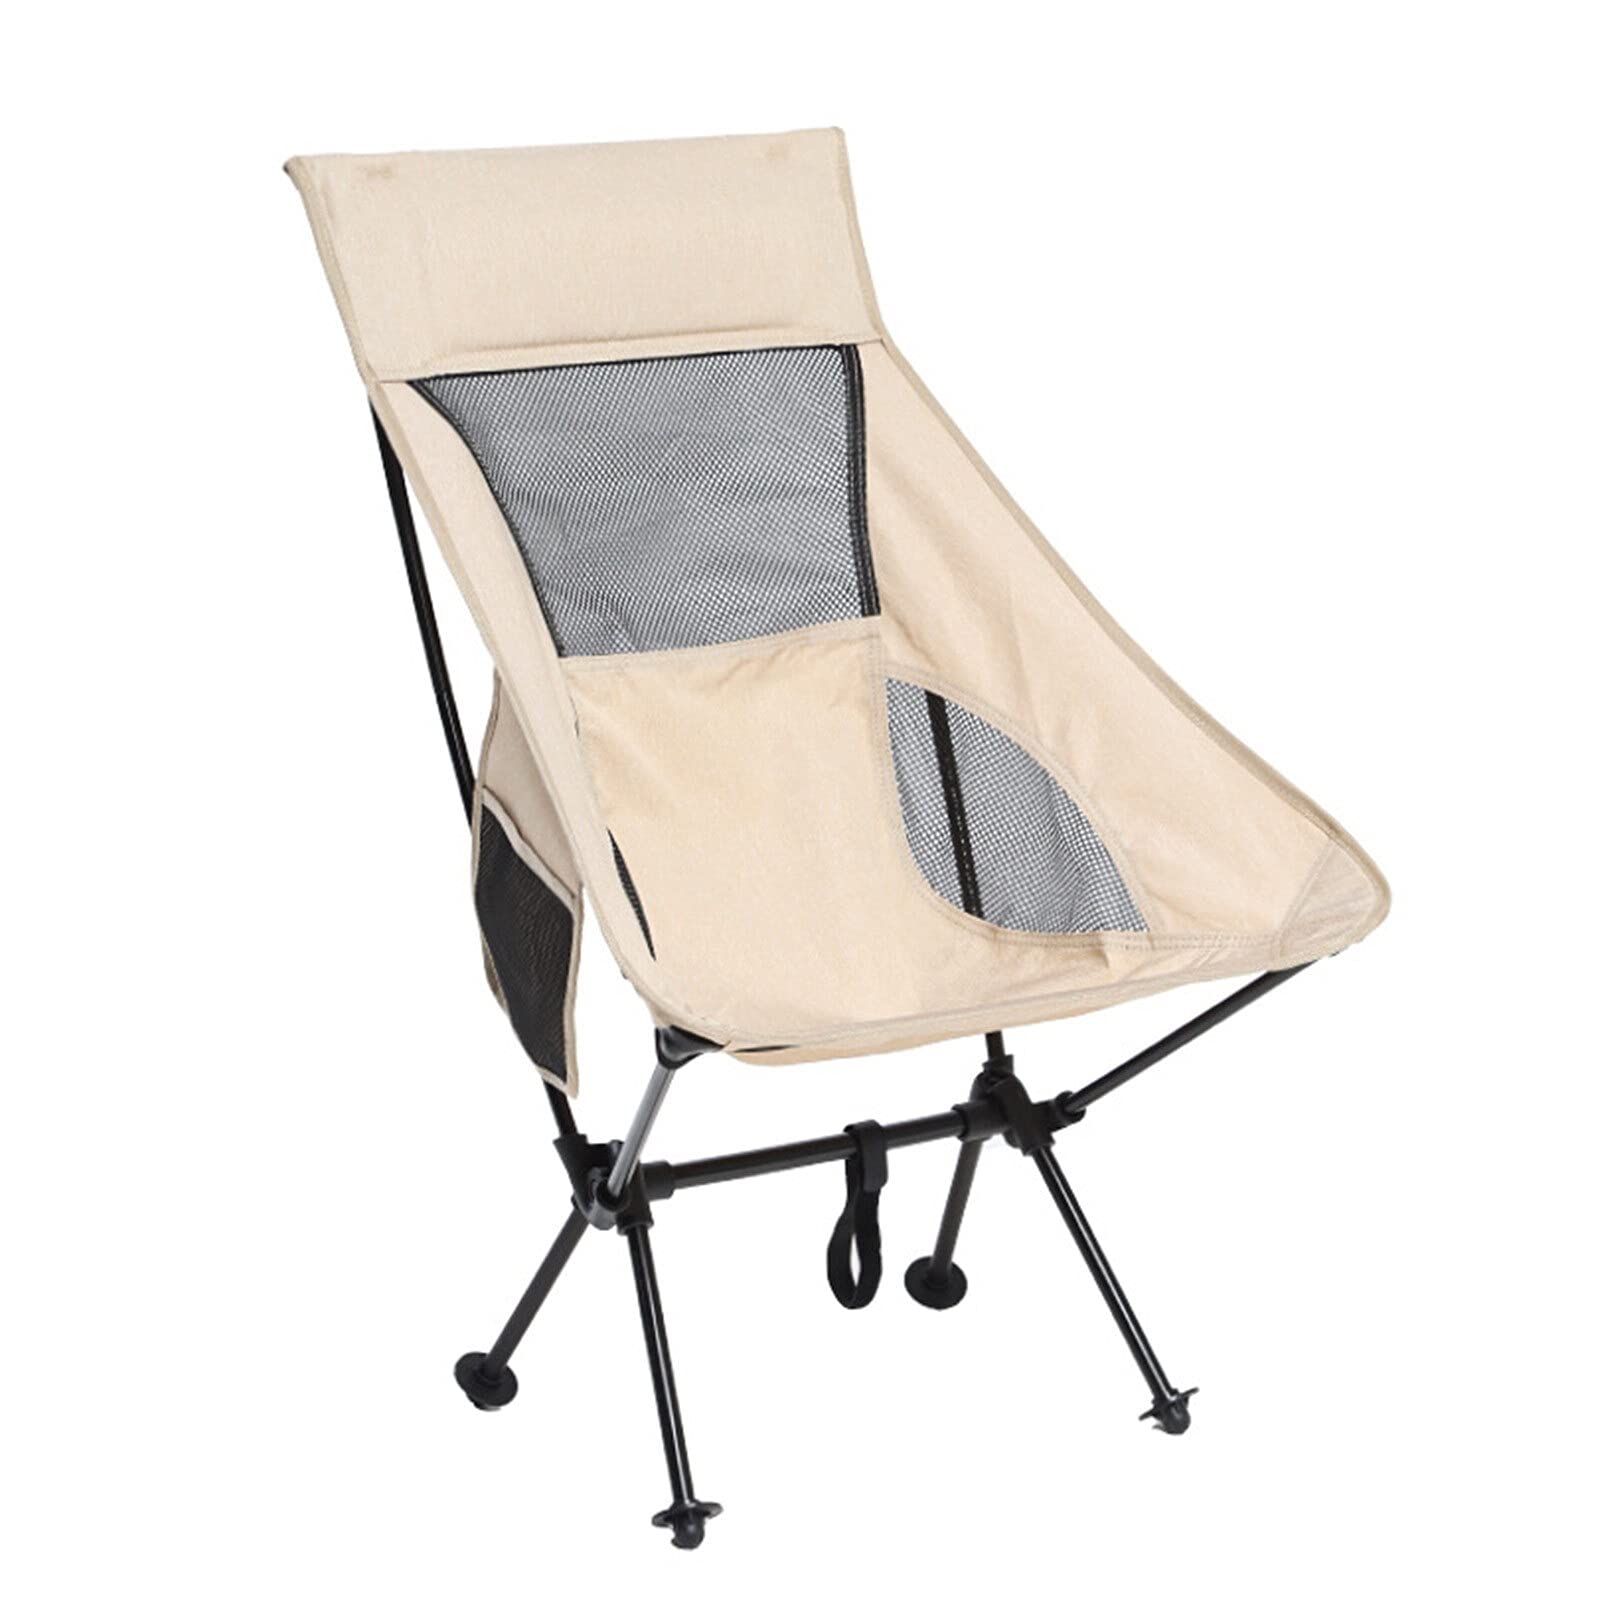 送料無料Outdoor Camping Chair Oxford Cloth Portable Folding Lengthen Camping Seat for Fishing Festival Picnic BBQ Beach U